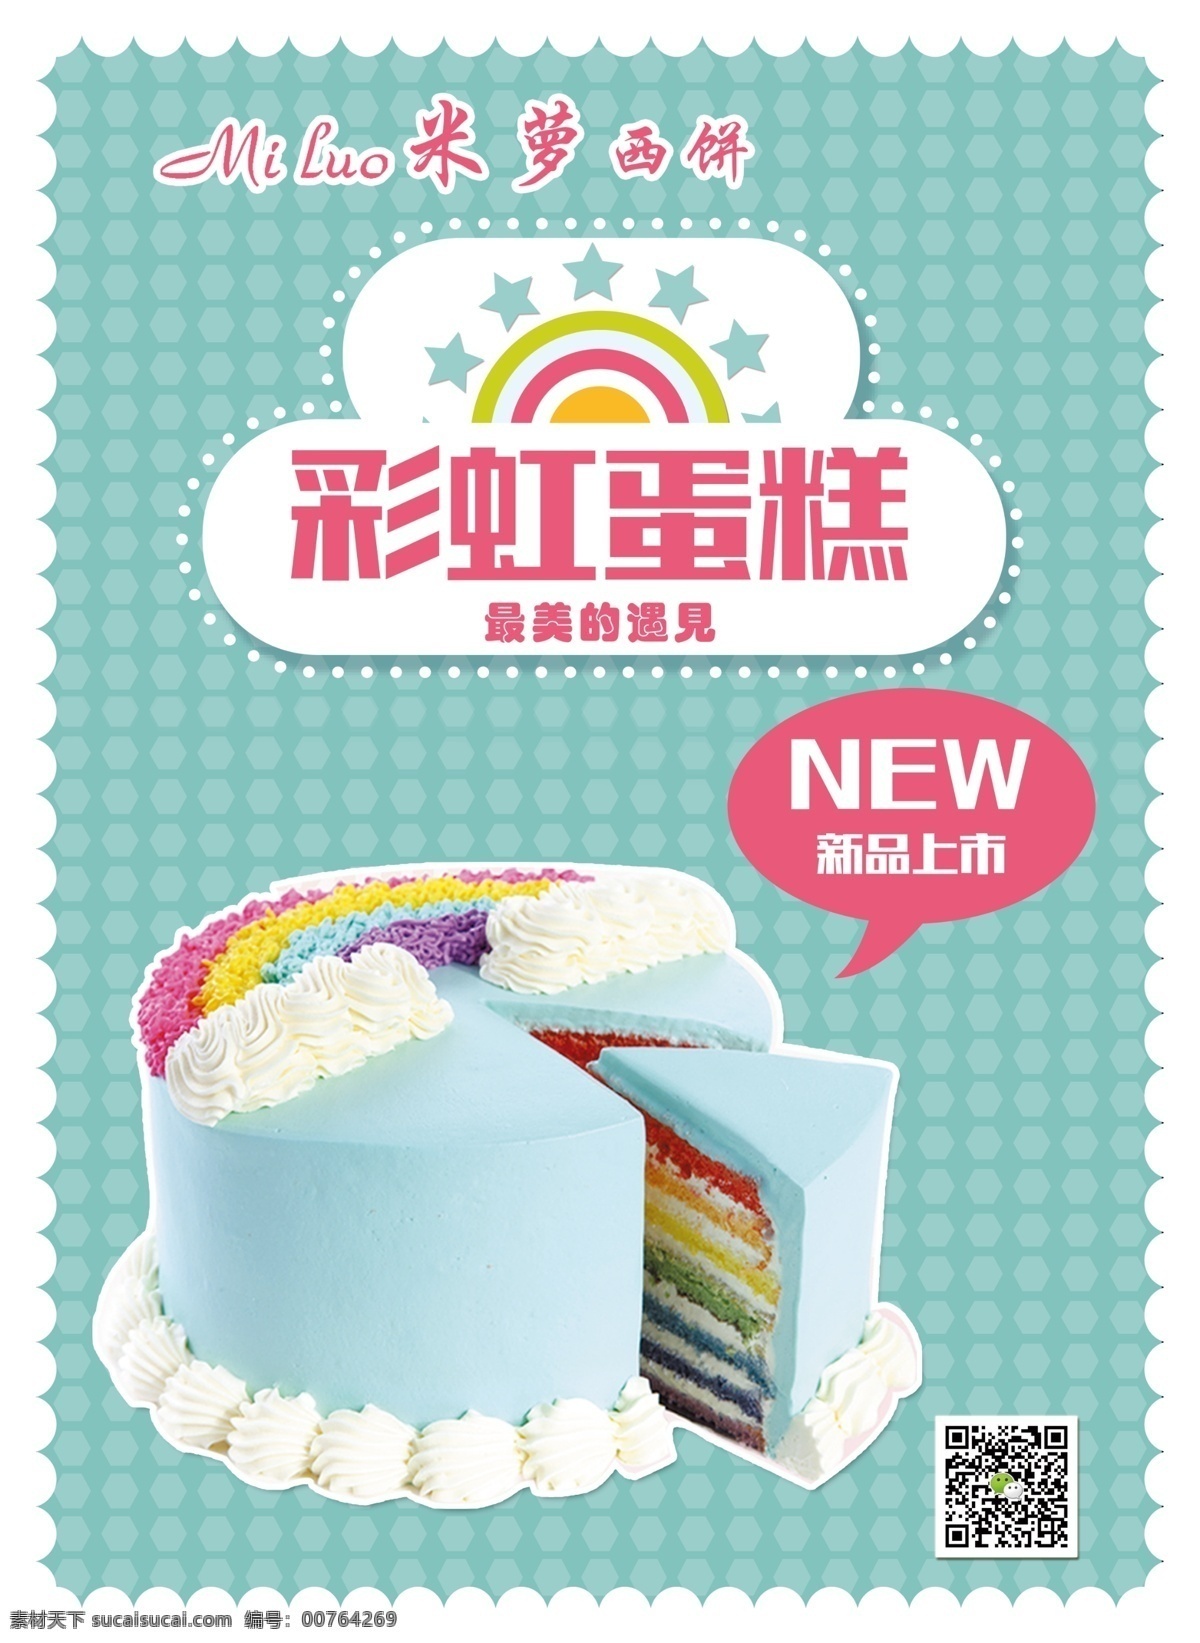 蛋糕海报 新品 彩虹蛋糕 蛋糕店 西饼店 西点